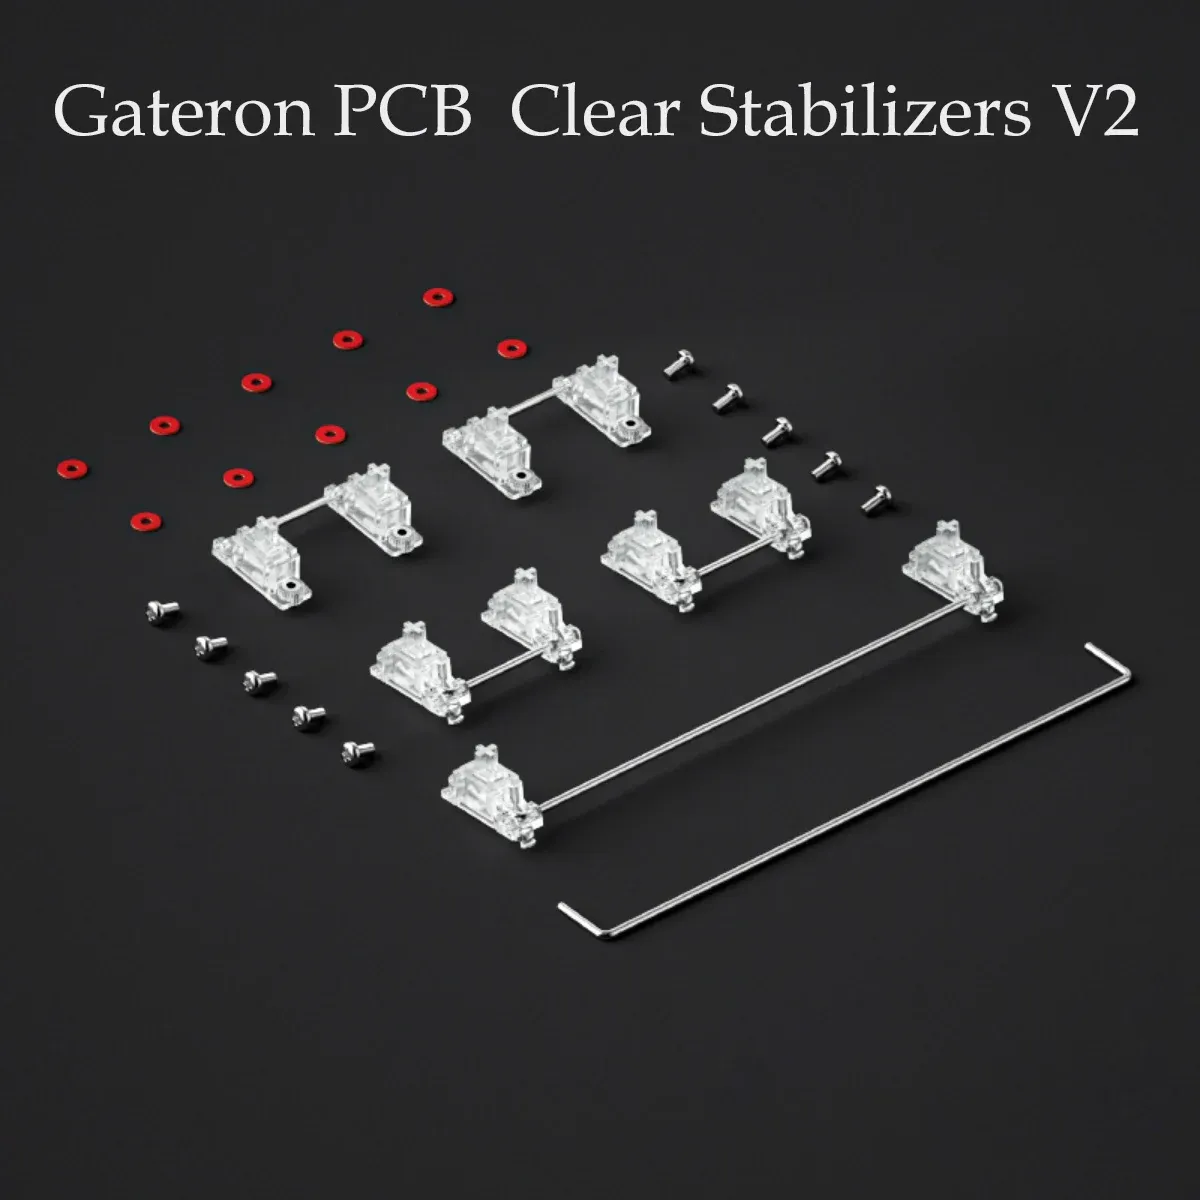 TASBOARDE GATERON V2 STABILITORI PCB CLEAR TRASPARETTIVI 7U, 6.25U, 2U STABILITORE A MOTO PCB per PCB tastiera meccanica MX